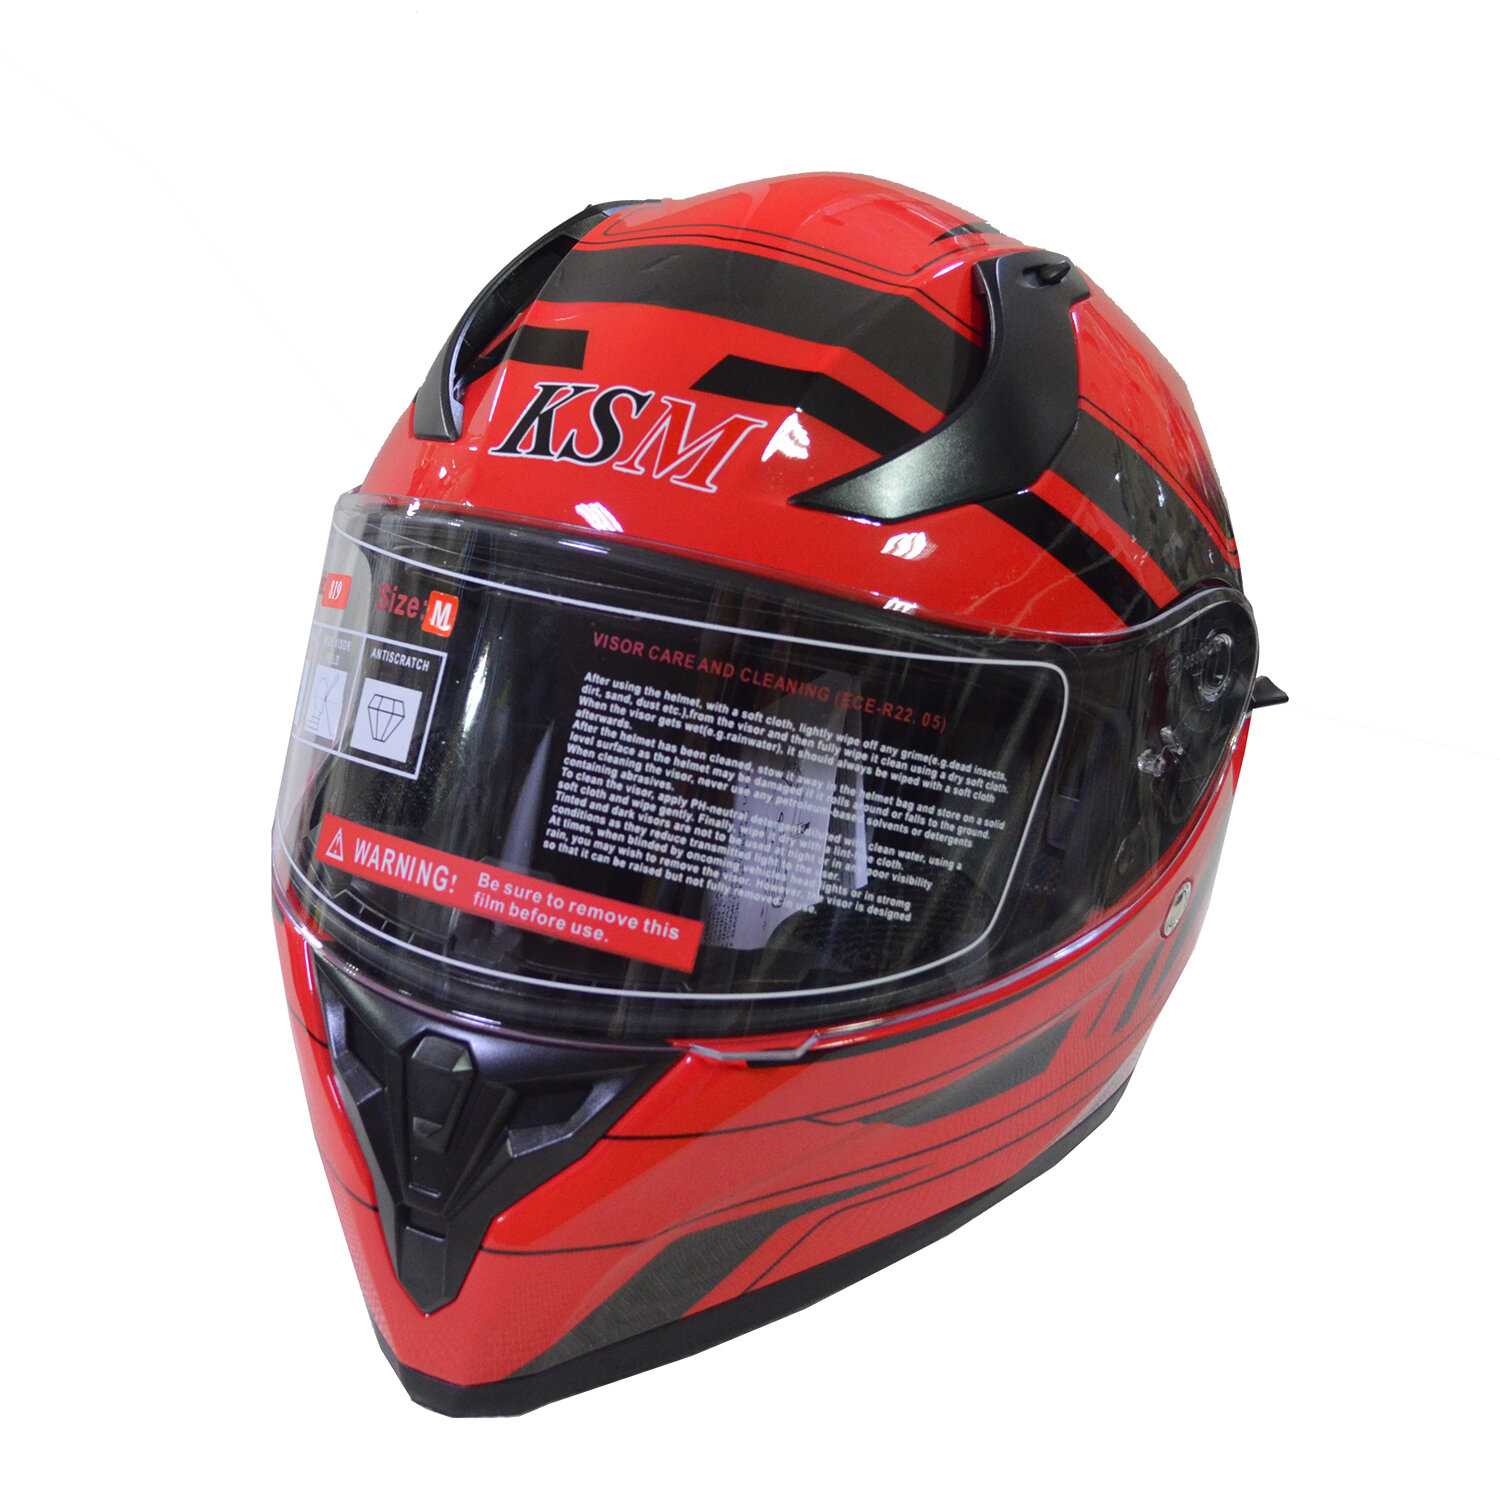 Шлем KSM Pro 819 интеграл+очки красно-черный глянцевый (M)128